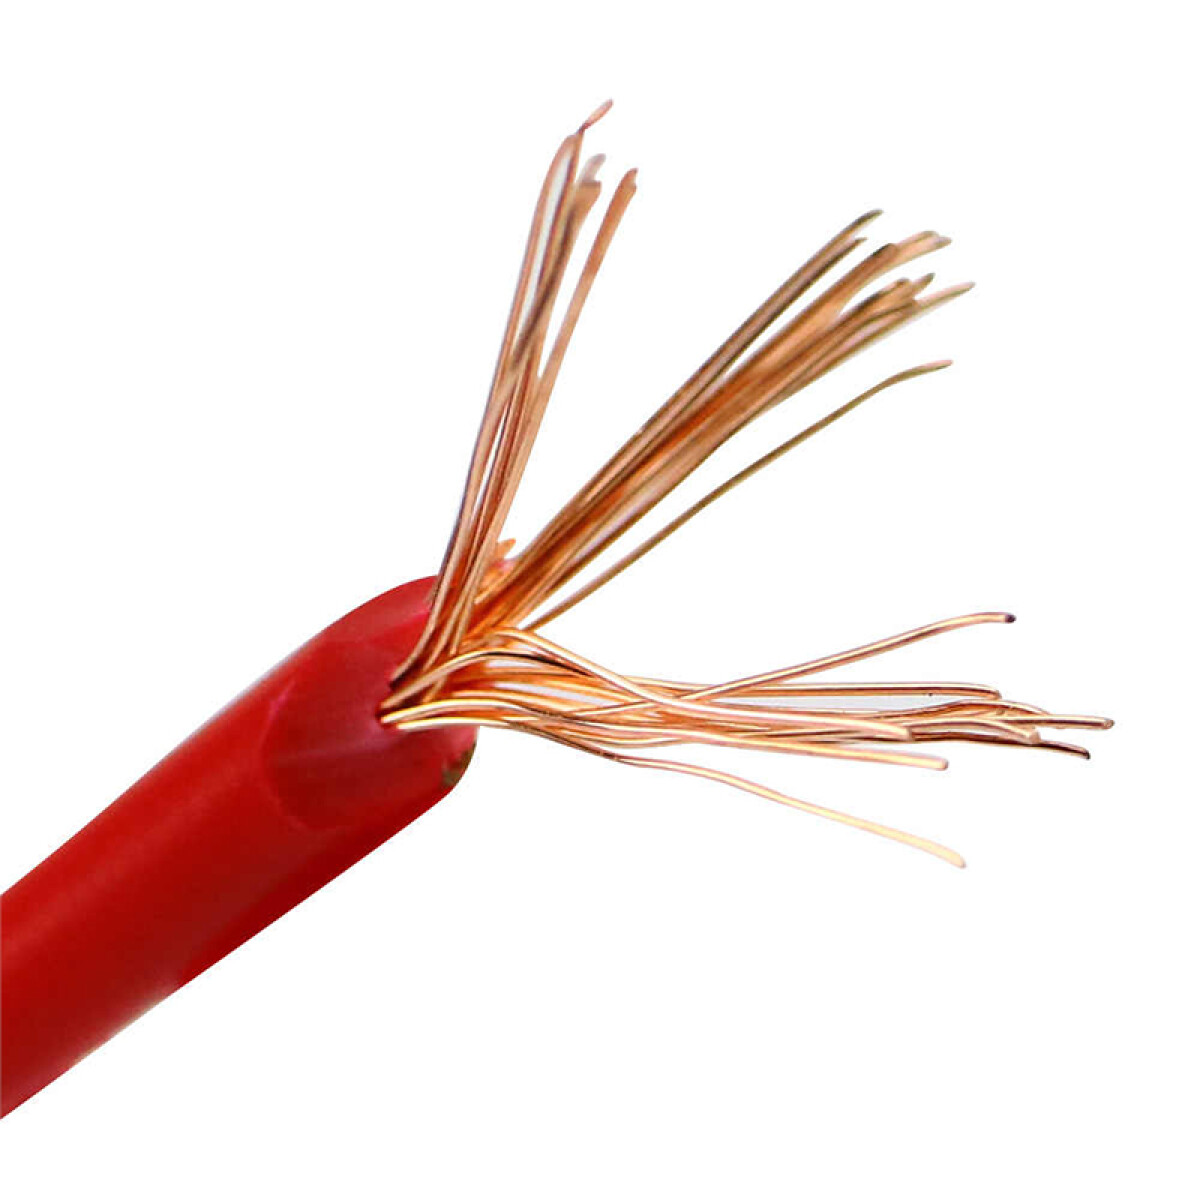 Cable de cobre flexible 10mm² rojo - Rollo 100mt - C94366 